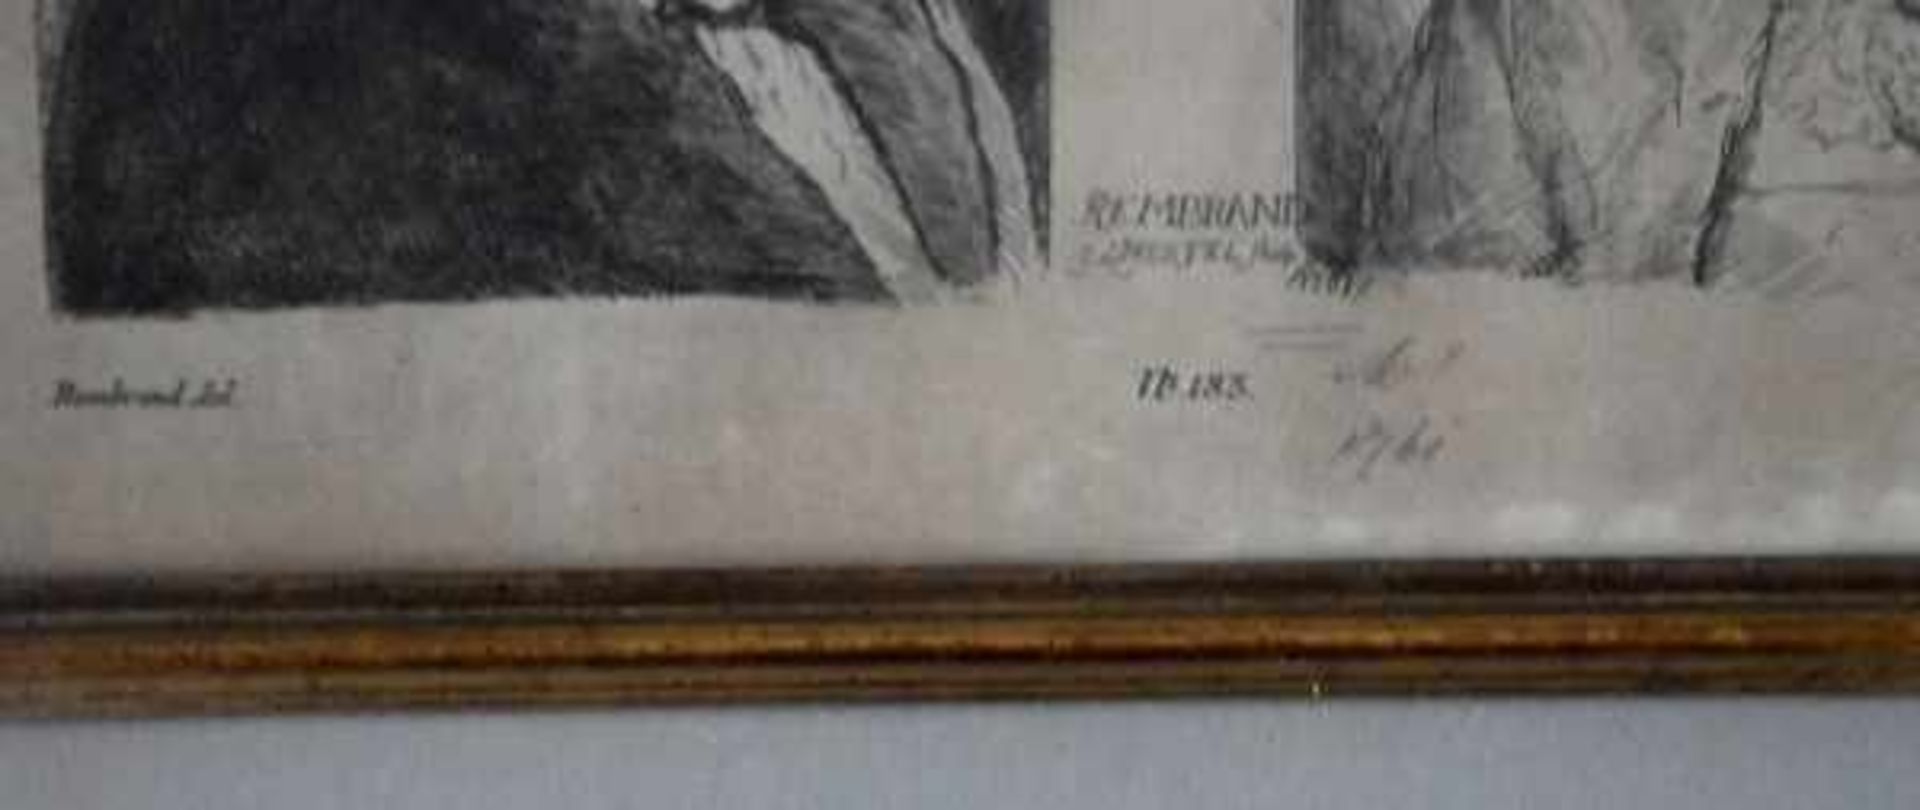 HERTEL Georg Johannes(18.Jh.) "Rembrand(t)", Kopie nach Rembrandt mit zwei Ansichten, No 183, - Bild 3 aus 3